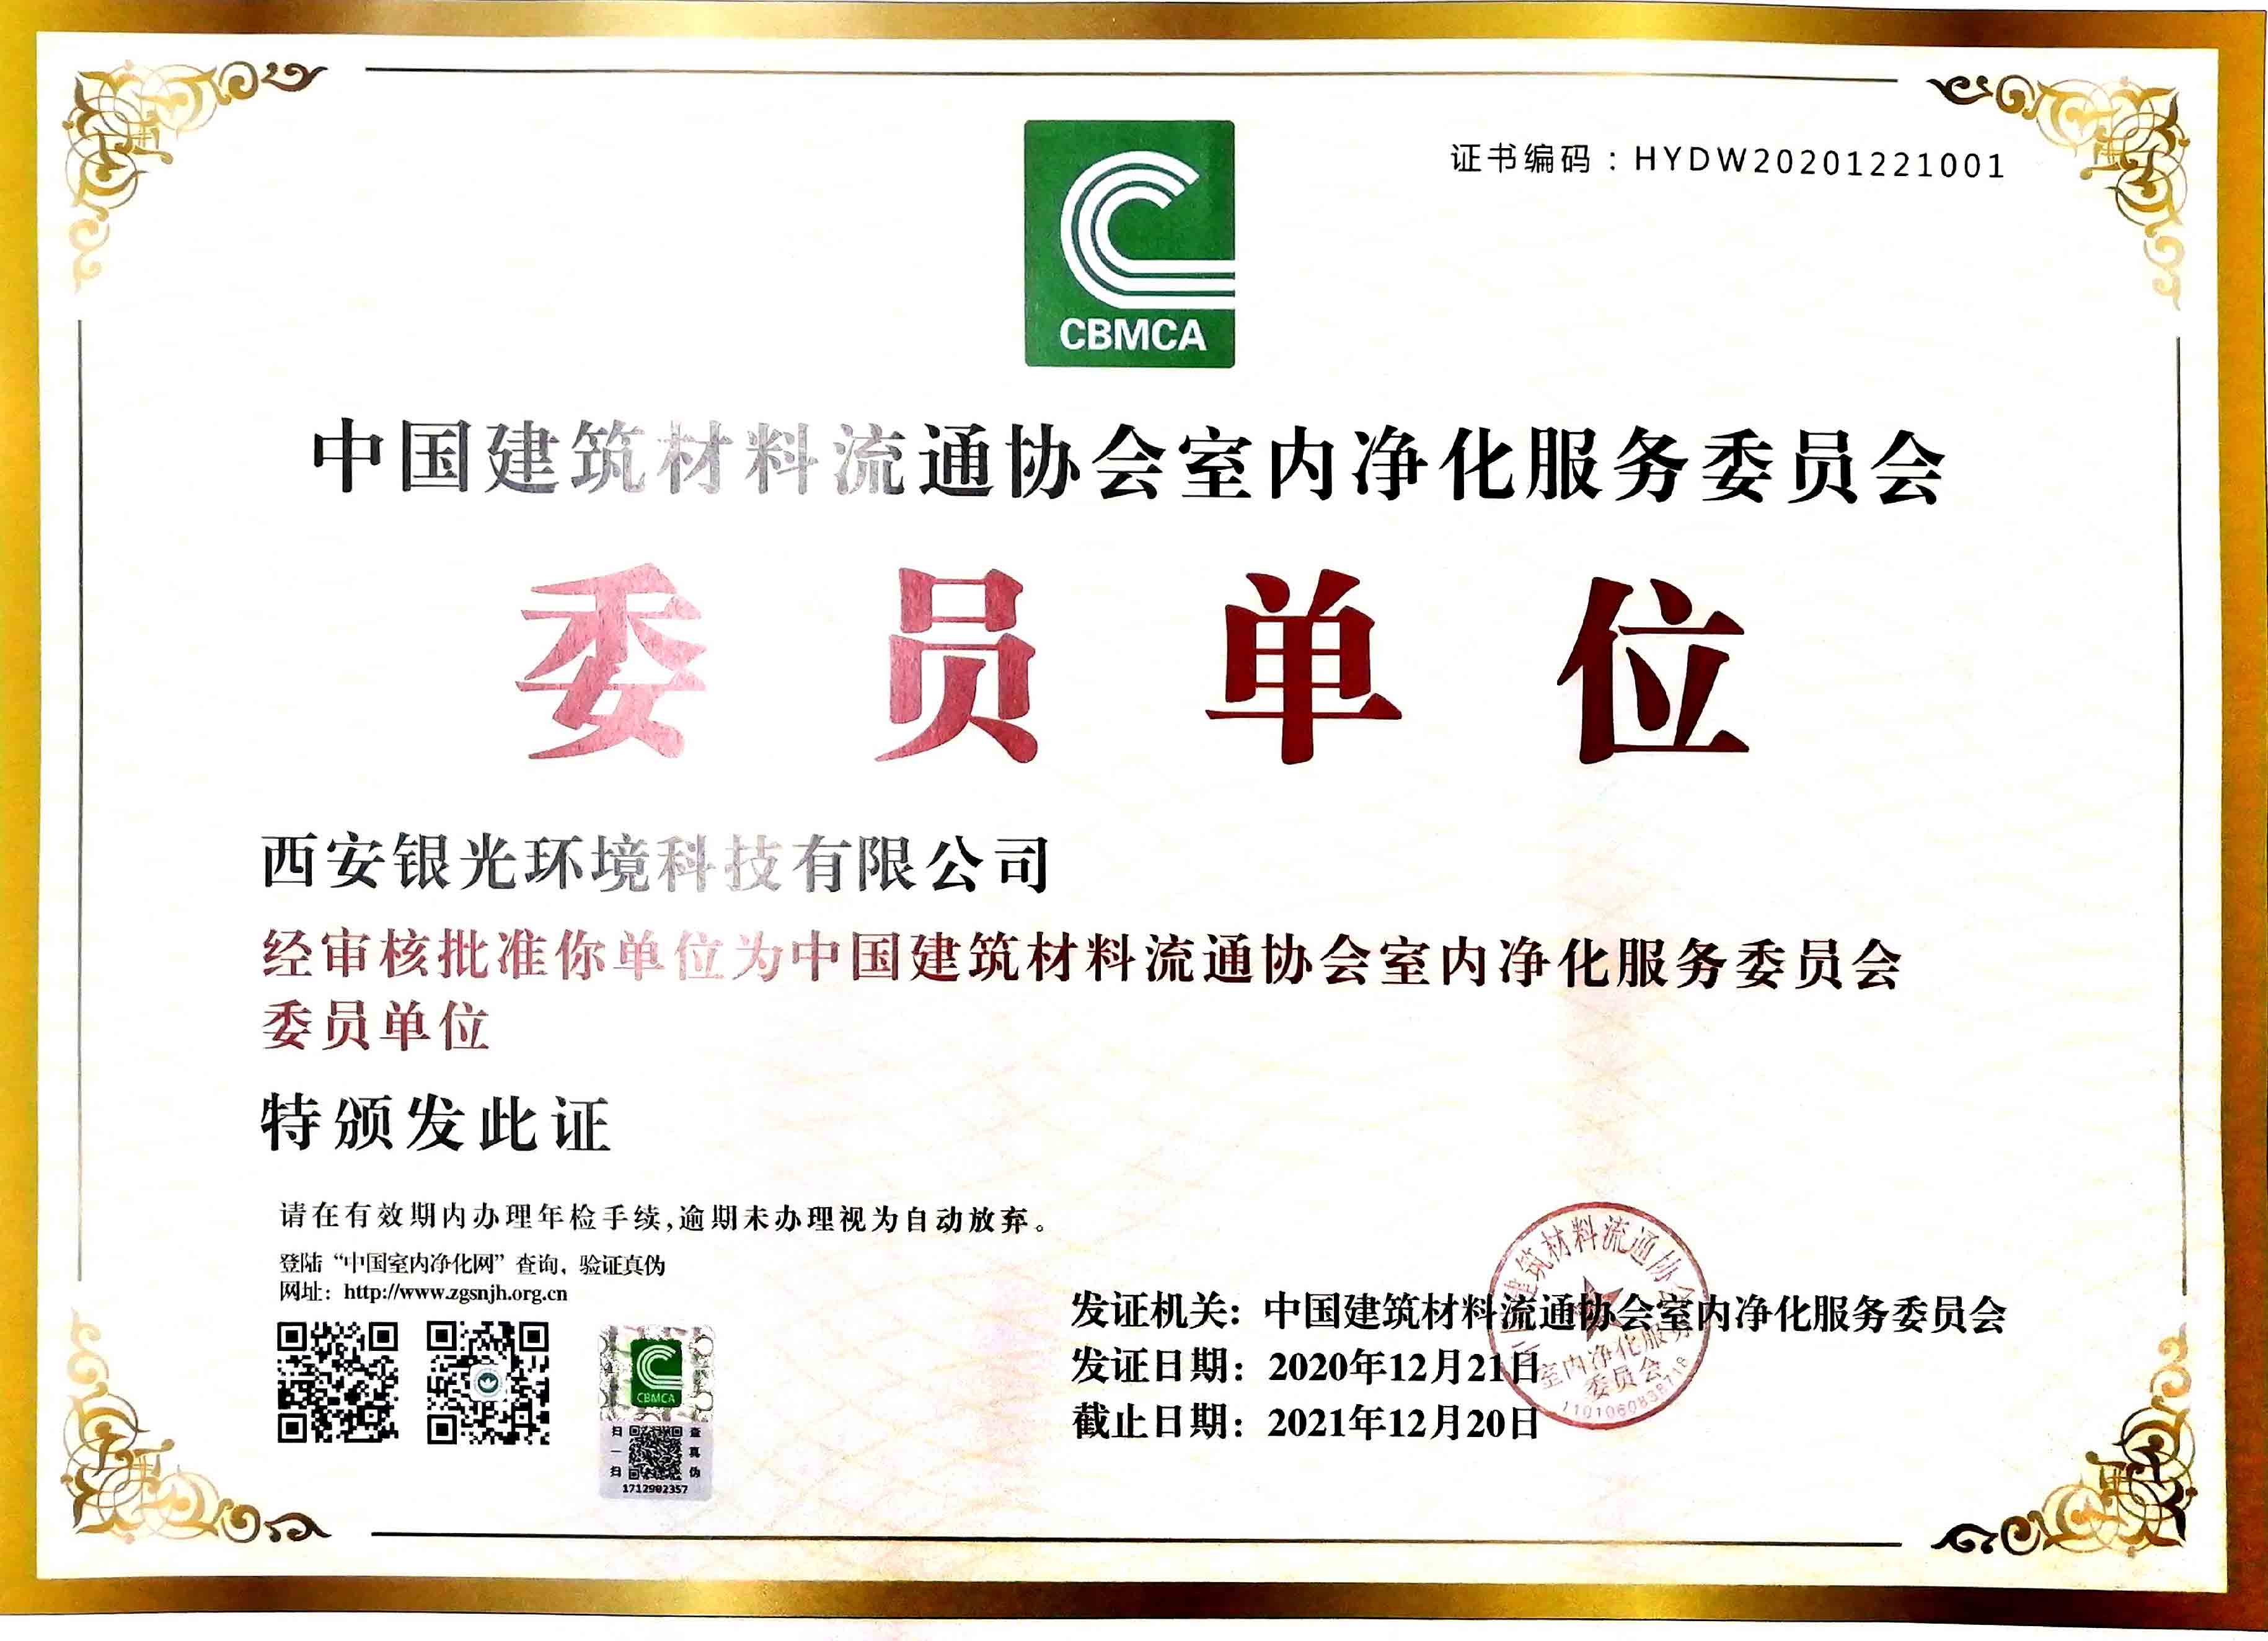 銀光環境成為“中國建筑材料室內凈化服務委員會”委員單位